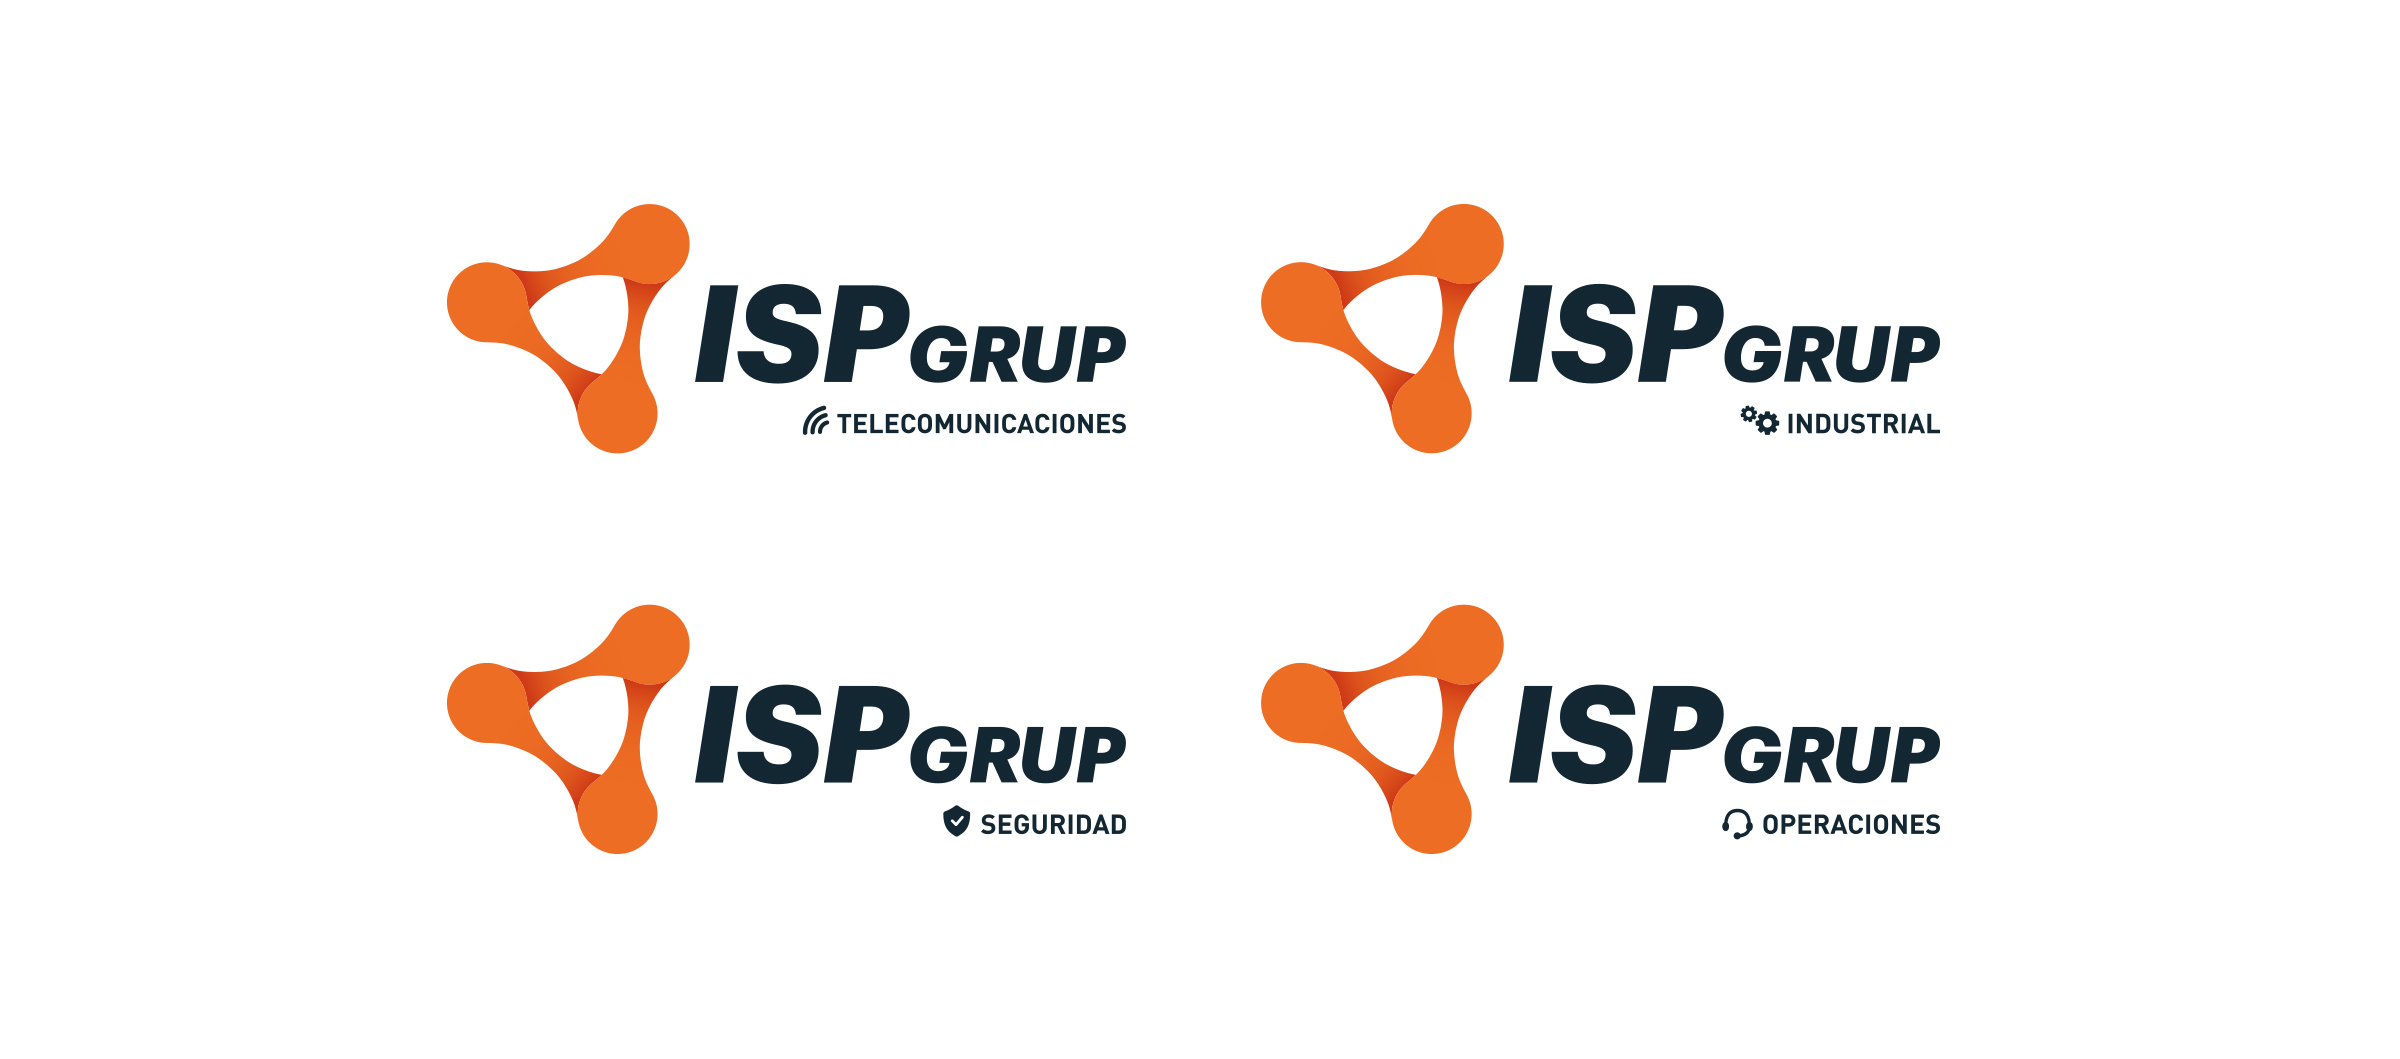 ISP Grup